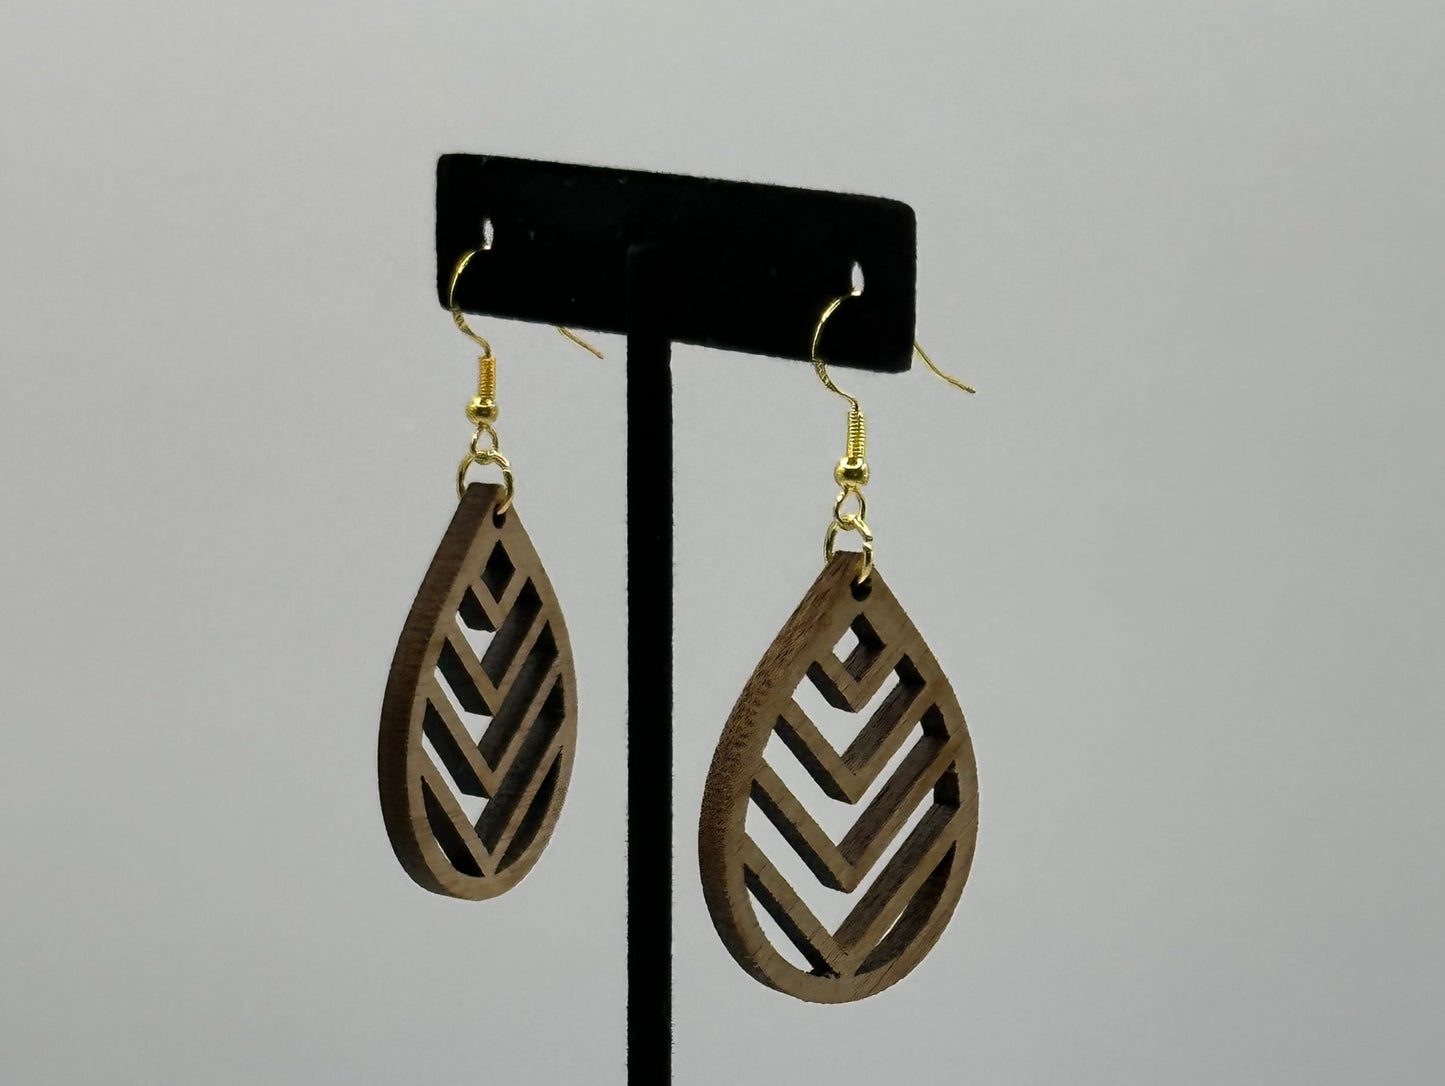 Walnut teardrop earrings with golden finish 925 sterling silver French hooks.